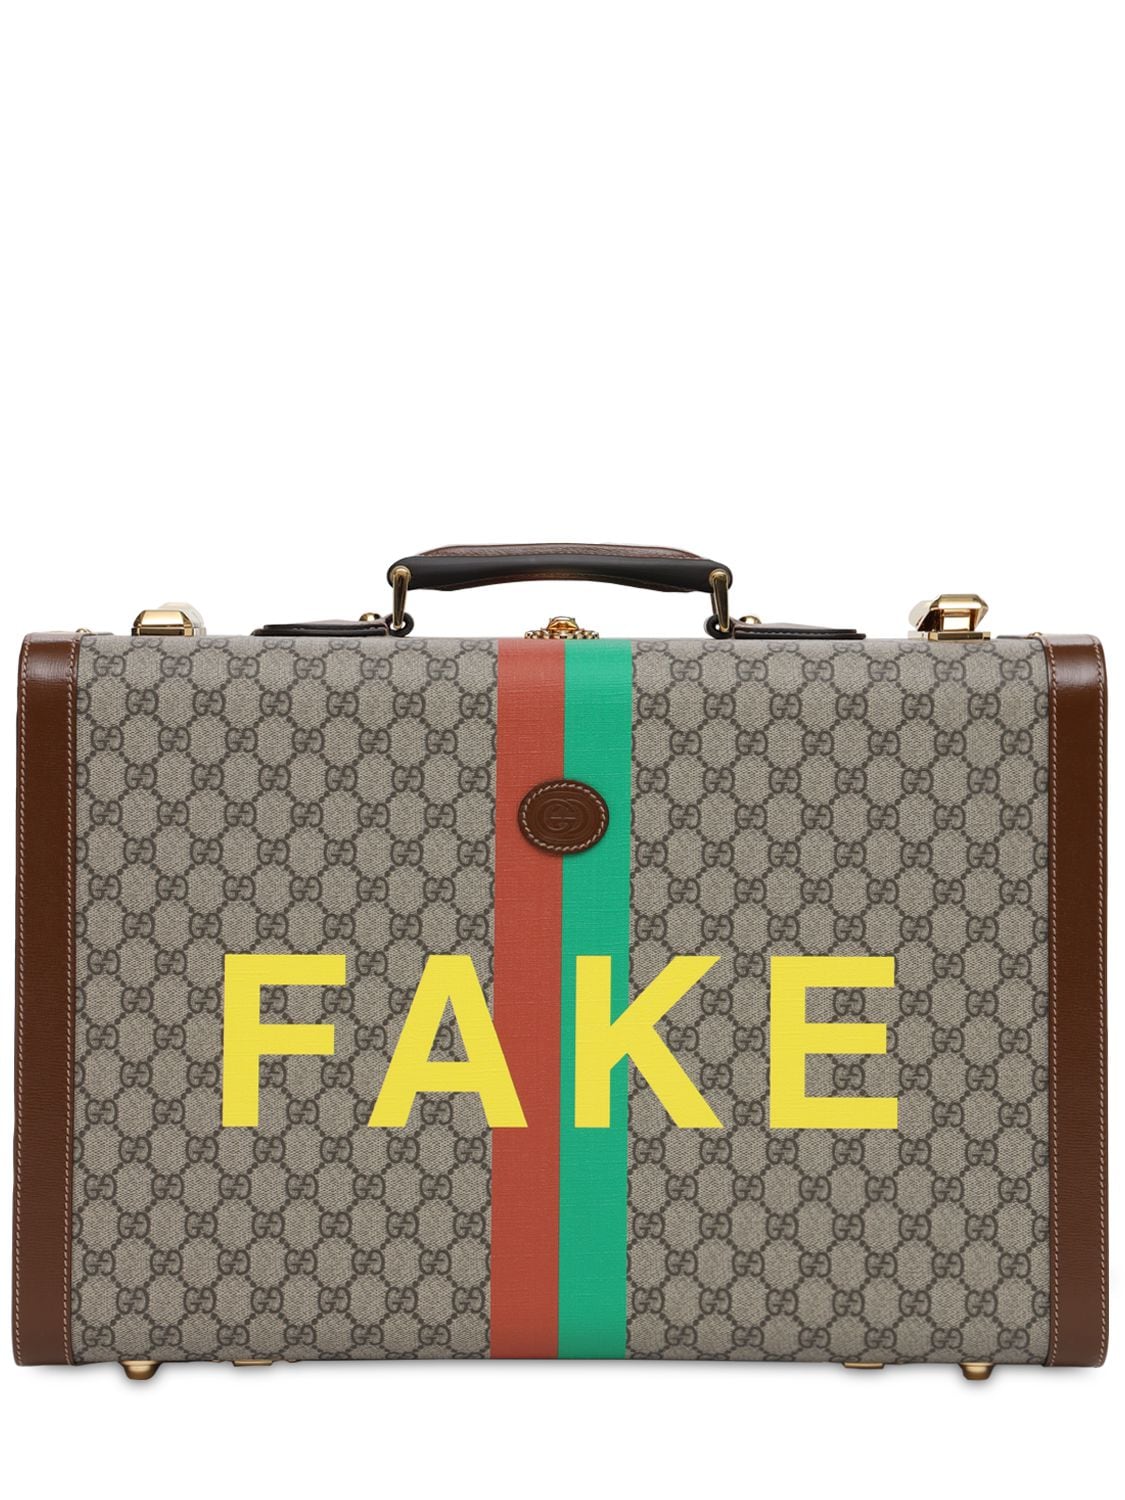 Gg Supreme Fake Not Printed Suitcase